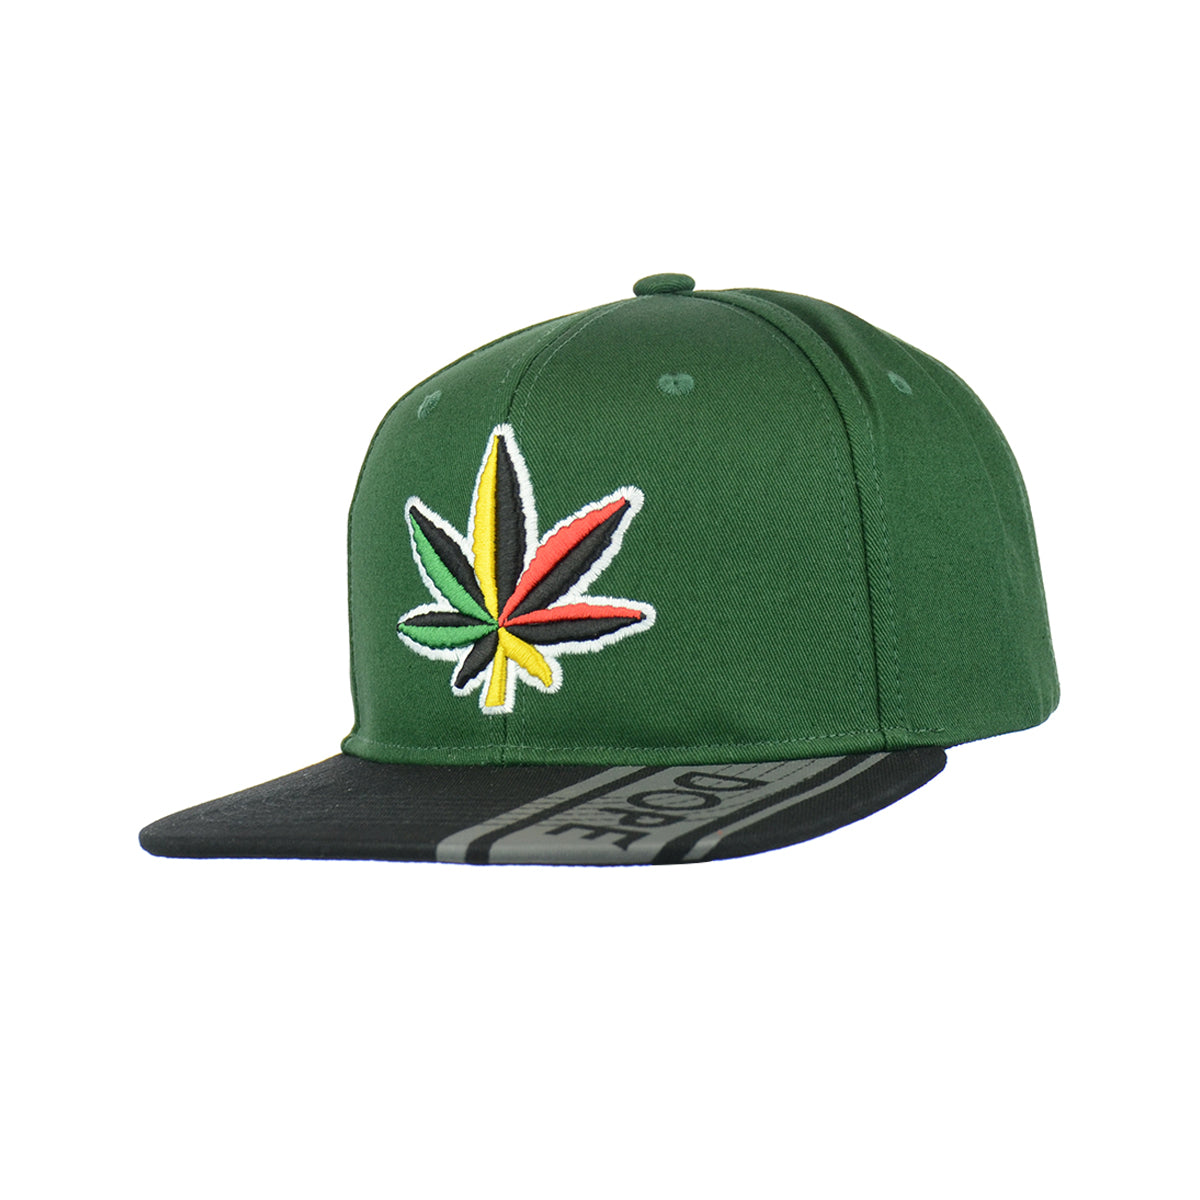 Rasta Leaf Embroidered Snapback Hat